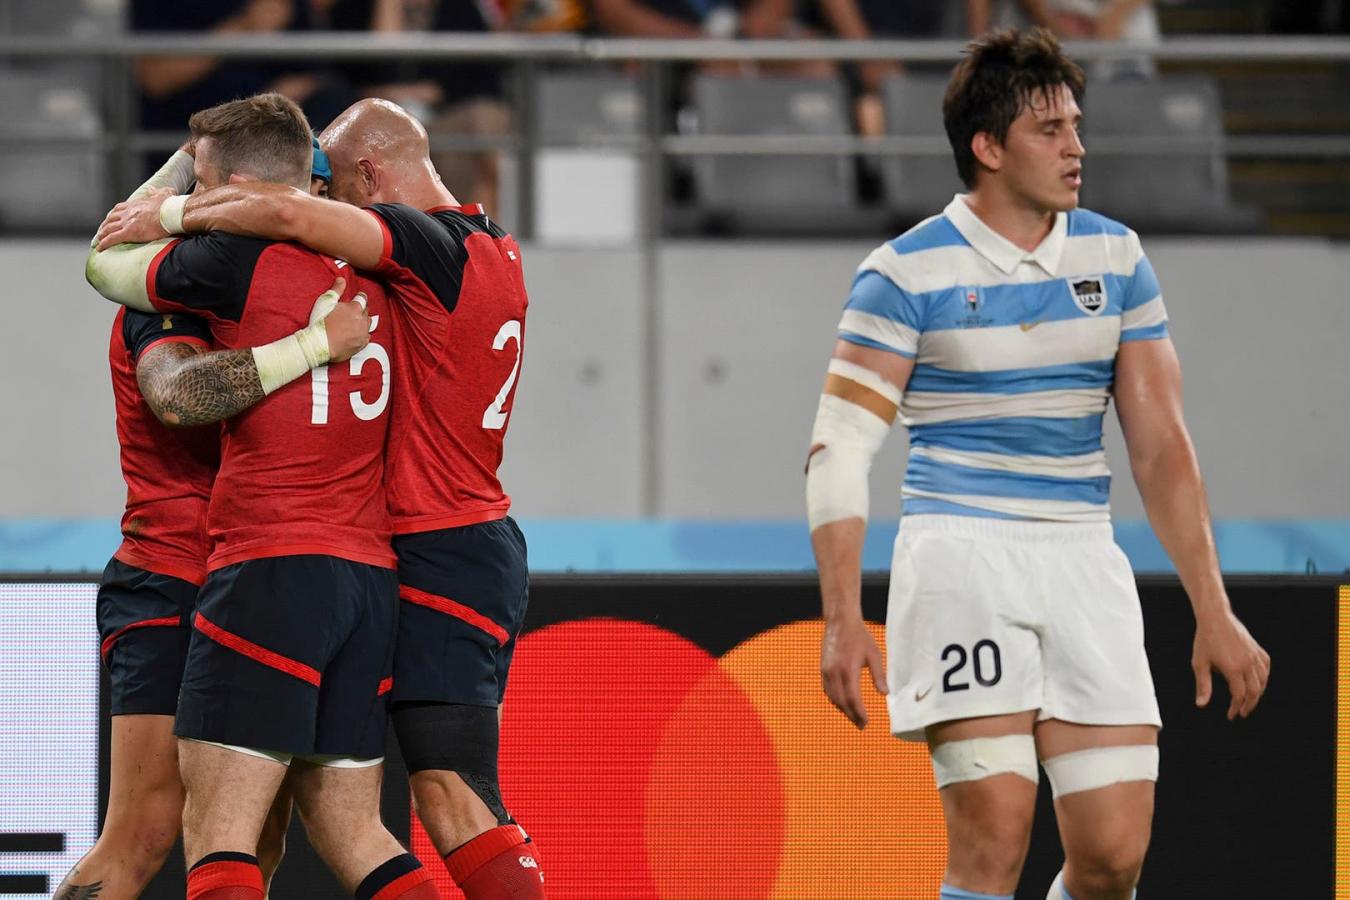 Imagen Último duelo mundialista entre Argentina e Inglaterra, en Japón 2019. Fue triunfo de La Rosa por 39-10.